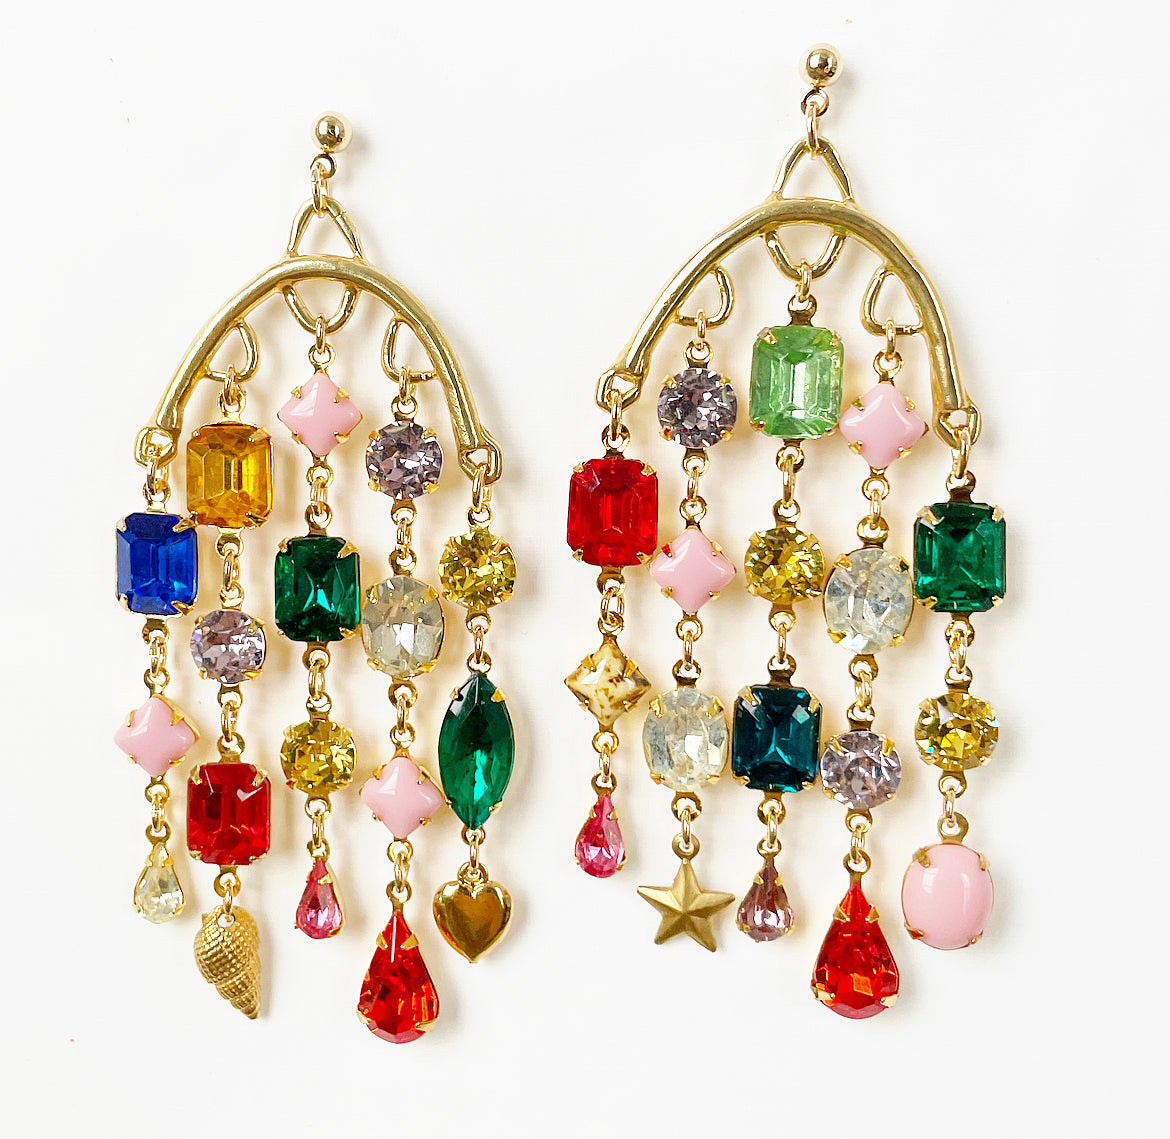 Rhinestone party earrings